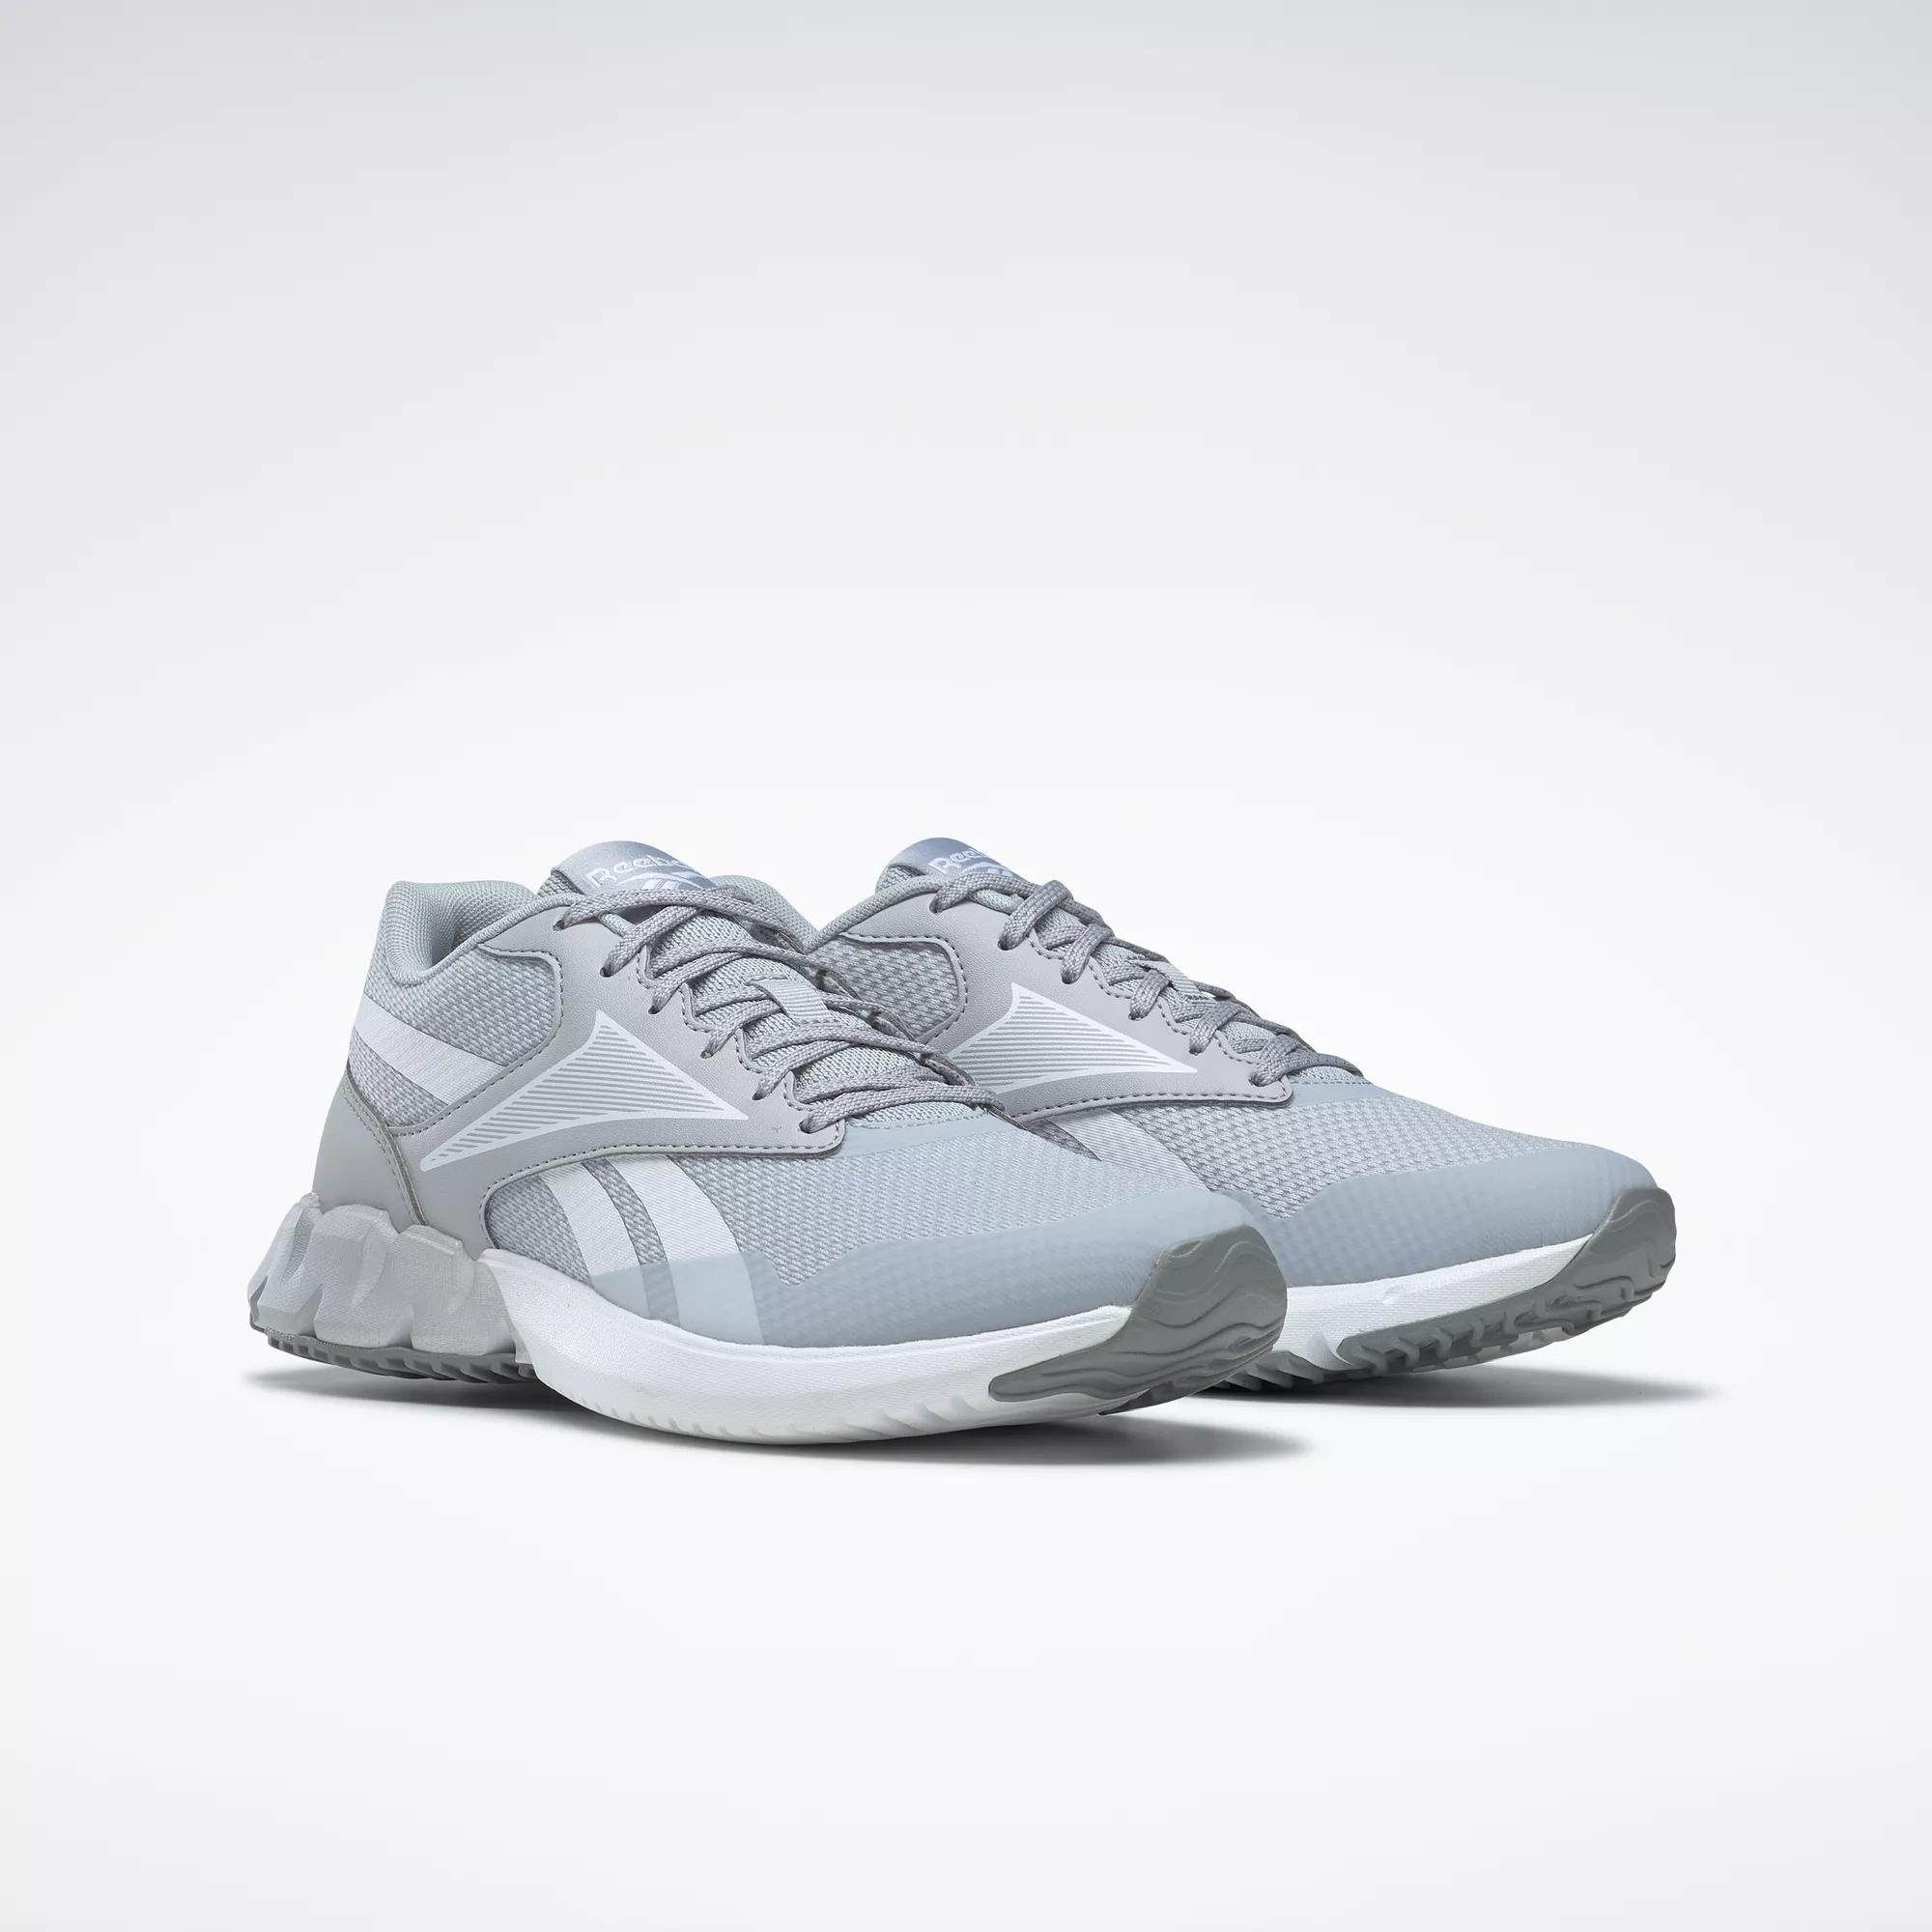 Ztaur Run Women's Running Shoes - Cold Grey 2 / Ftwr White / Cold Grey ...